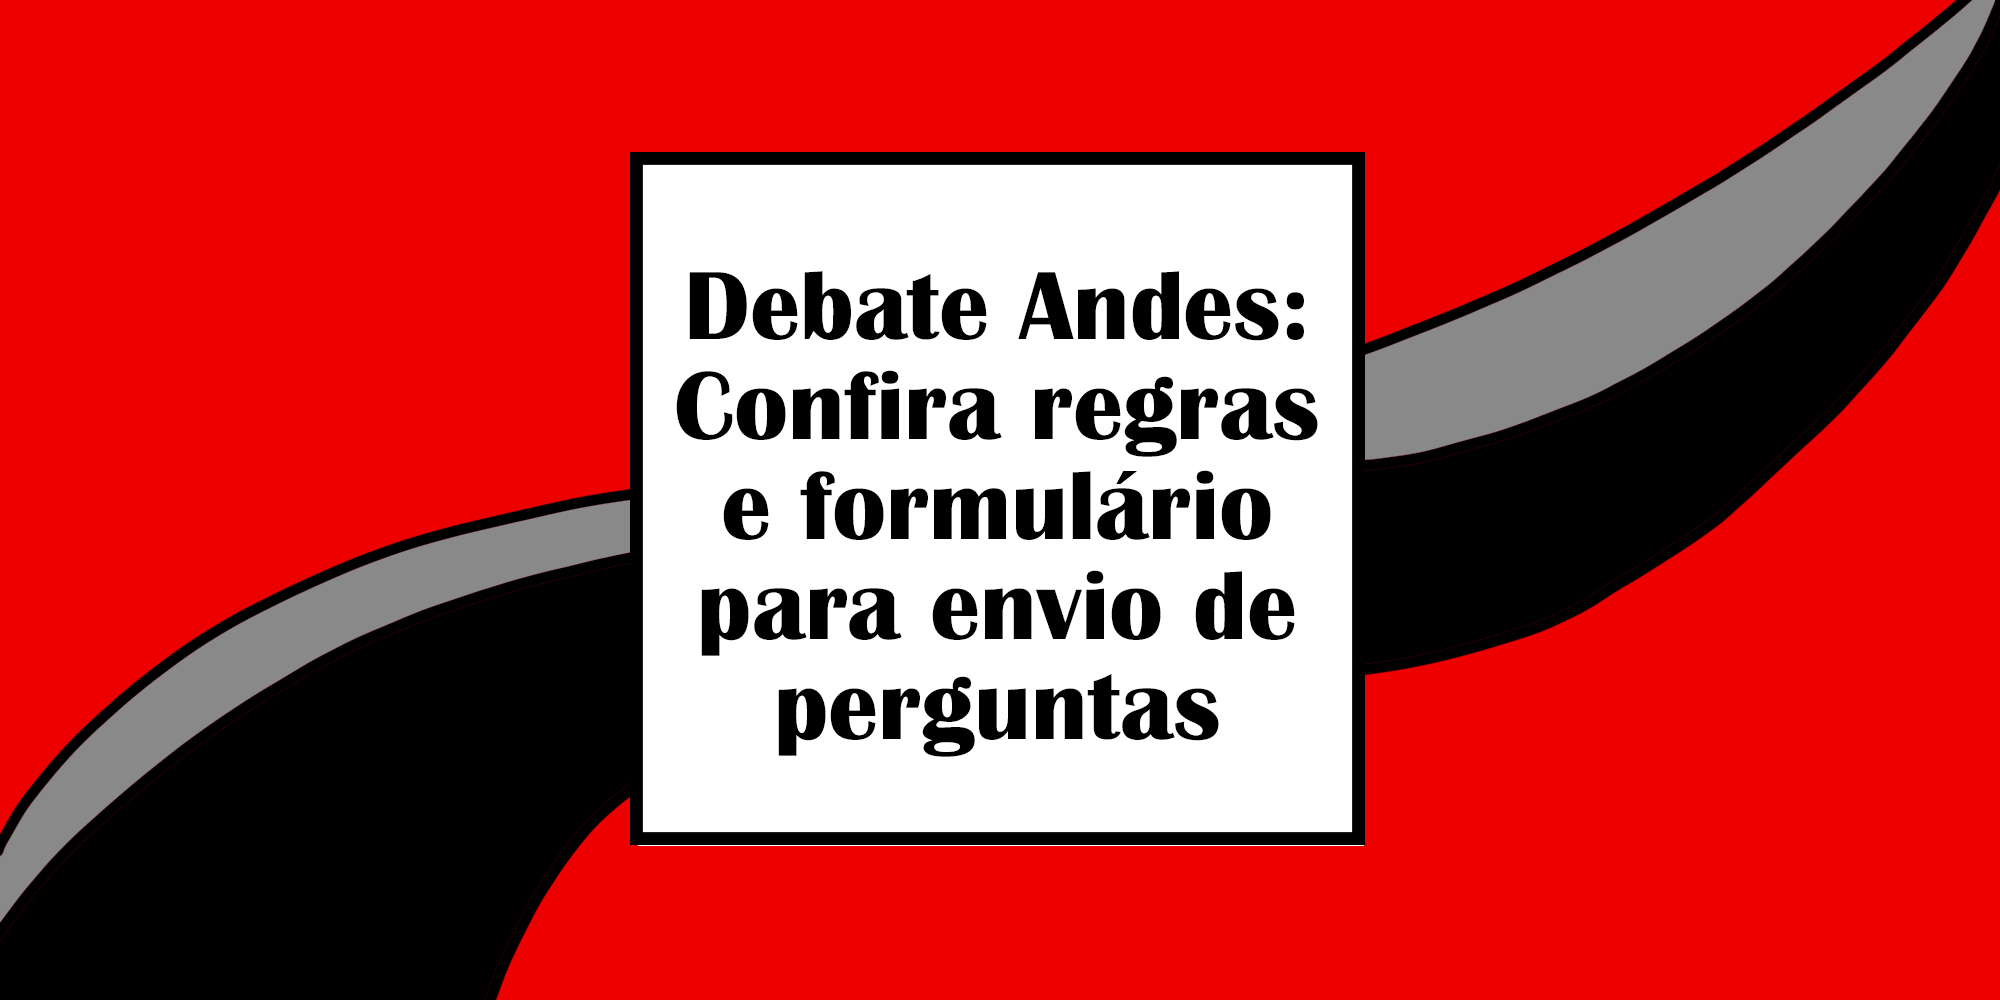 Debate Andes: confira regras e formulário para envio de perguntas